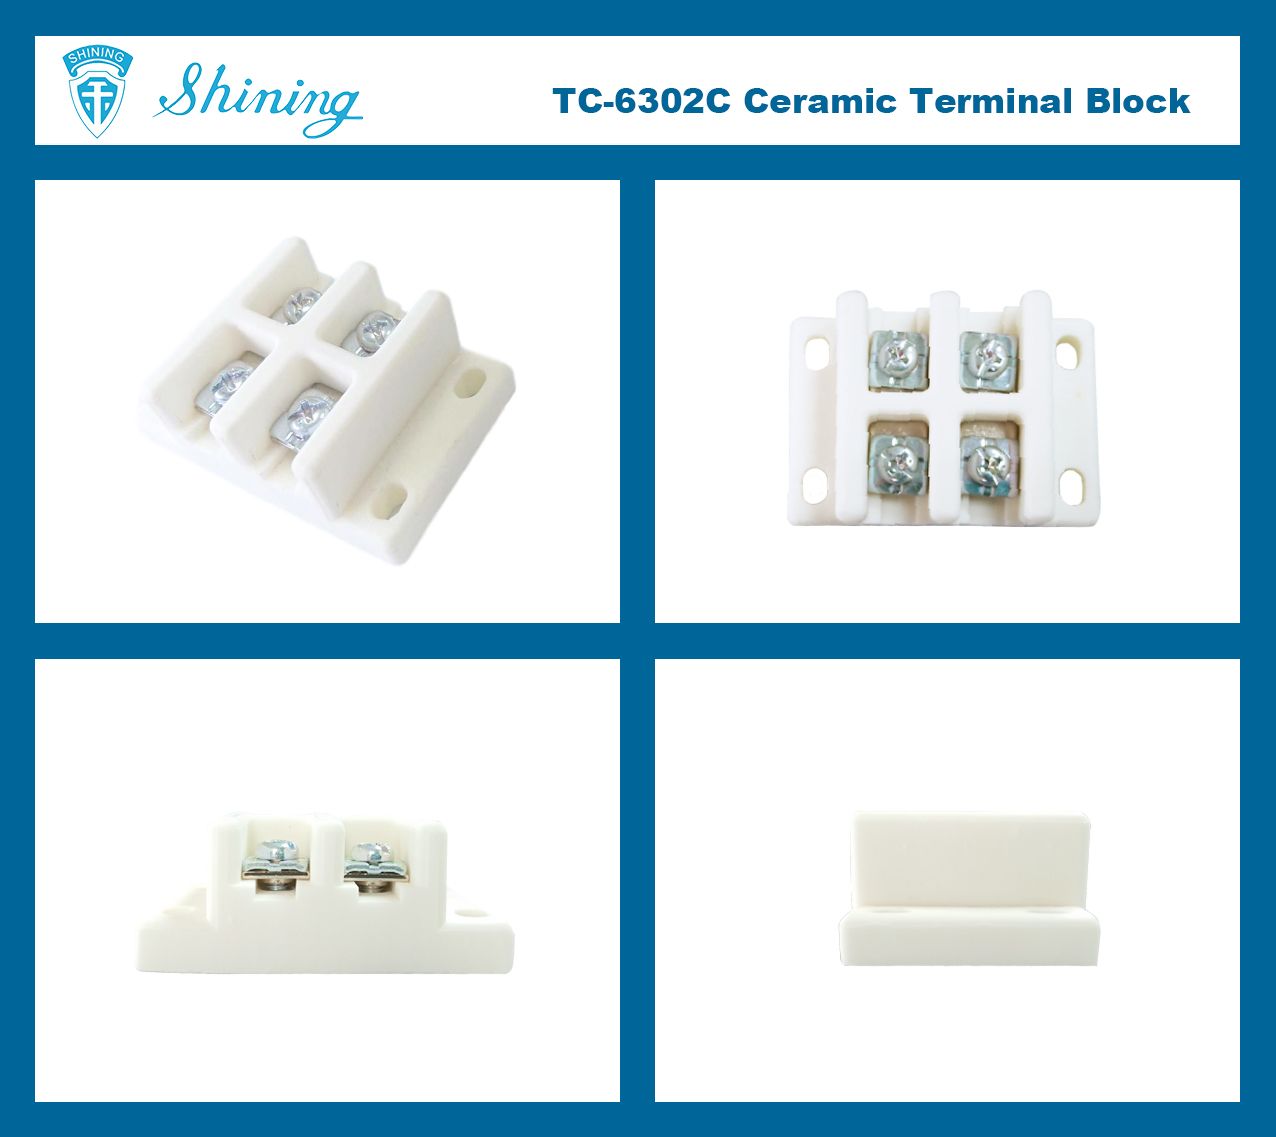 @$600V_30A_Terminal_Block$@TC-6302C_&lt;TC-6302C Panel Dipasang 600V 30A 2Poles Blok Terminal Seramik&gt;